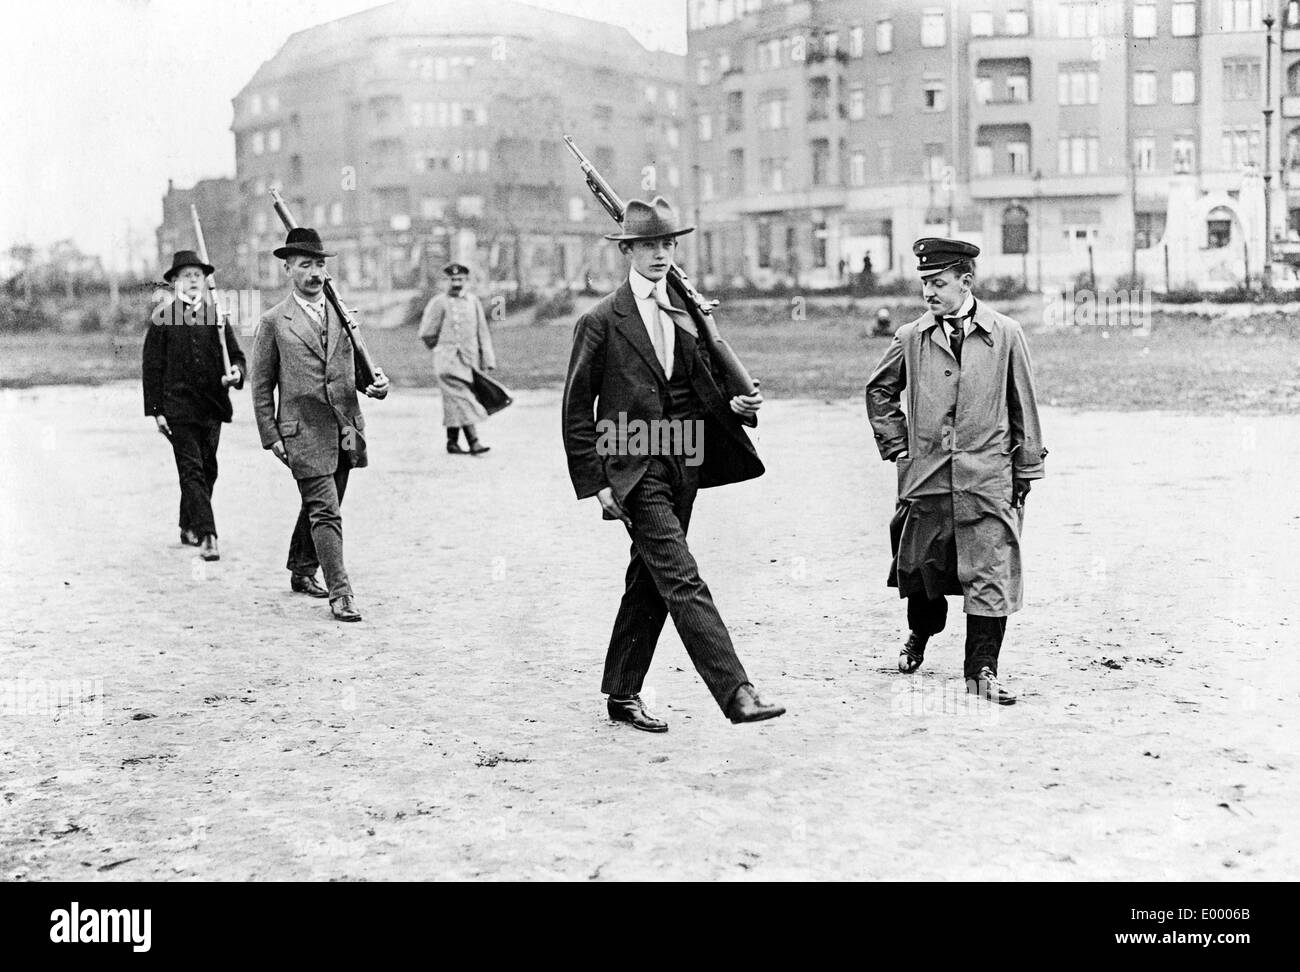 German men at a paramilitary exercise, 1914 Stock Photo